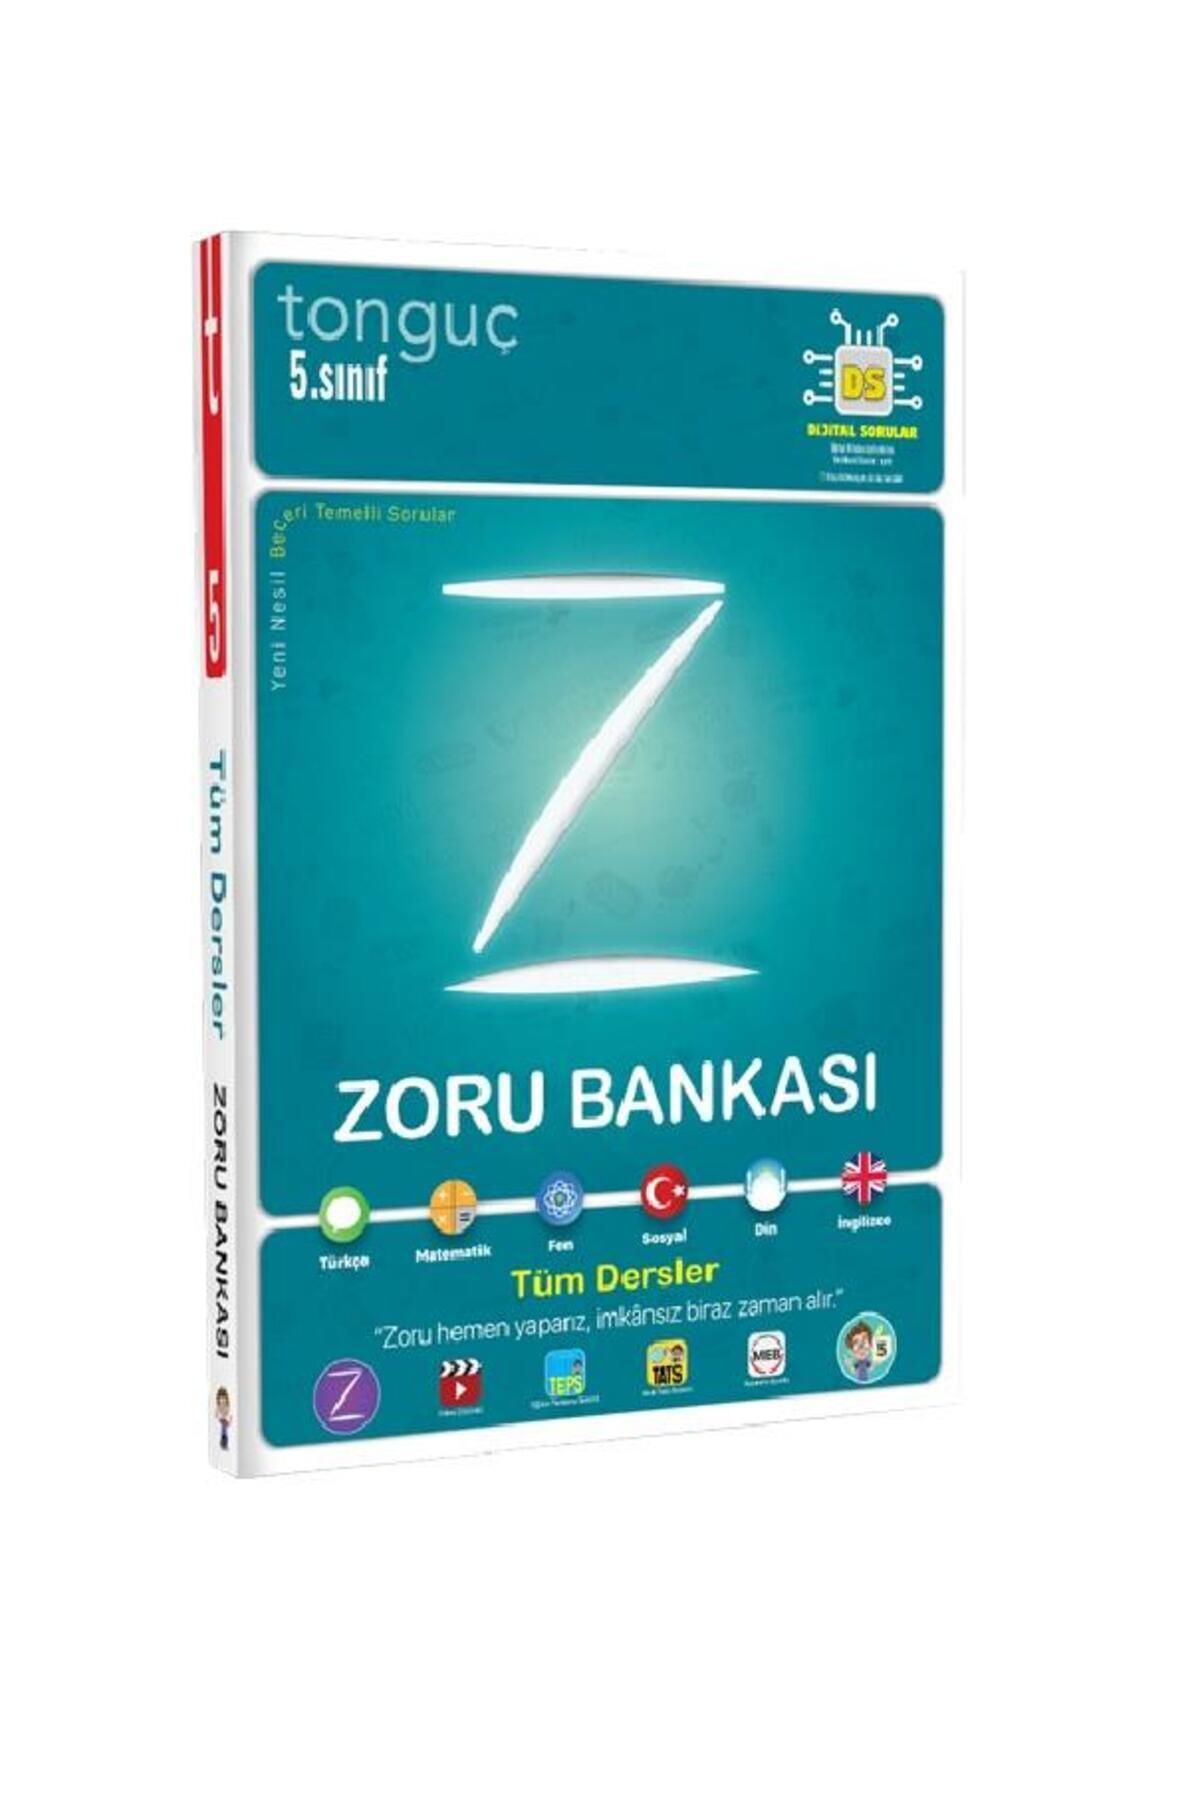 Tonguç Yayınları Tonguç 5. Sınıf Tüm Dersler Zoru Bankası (SORU BANKASI)